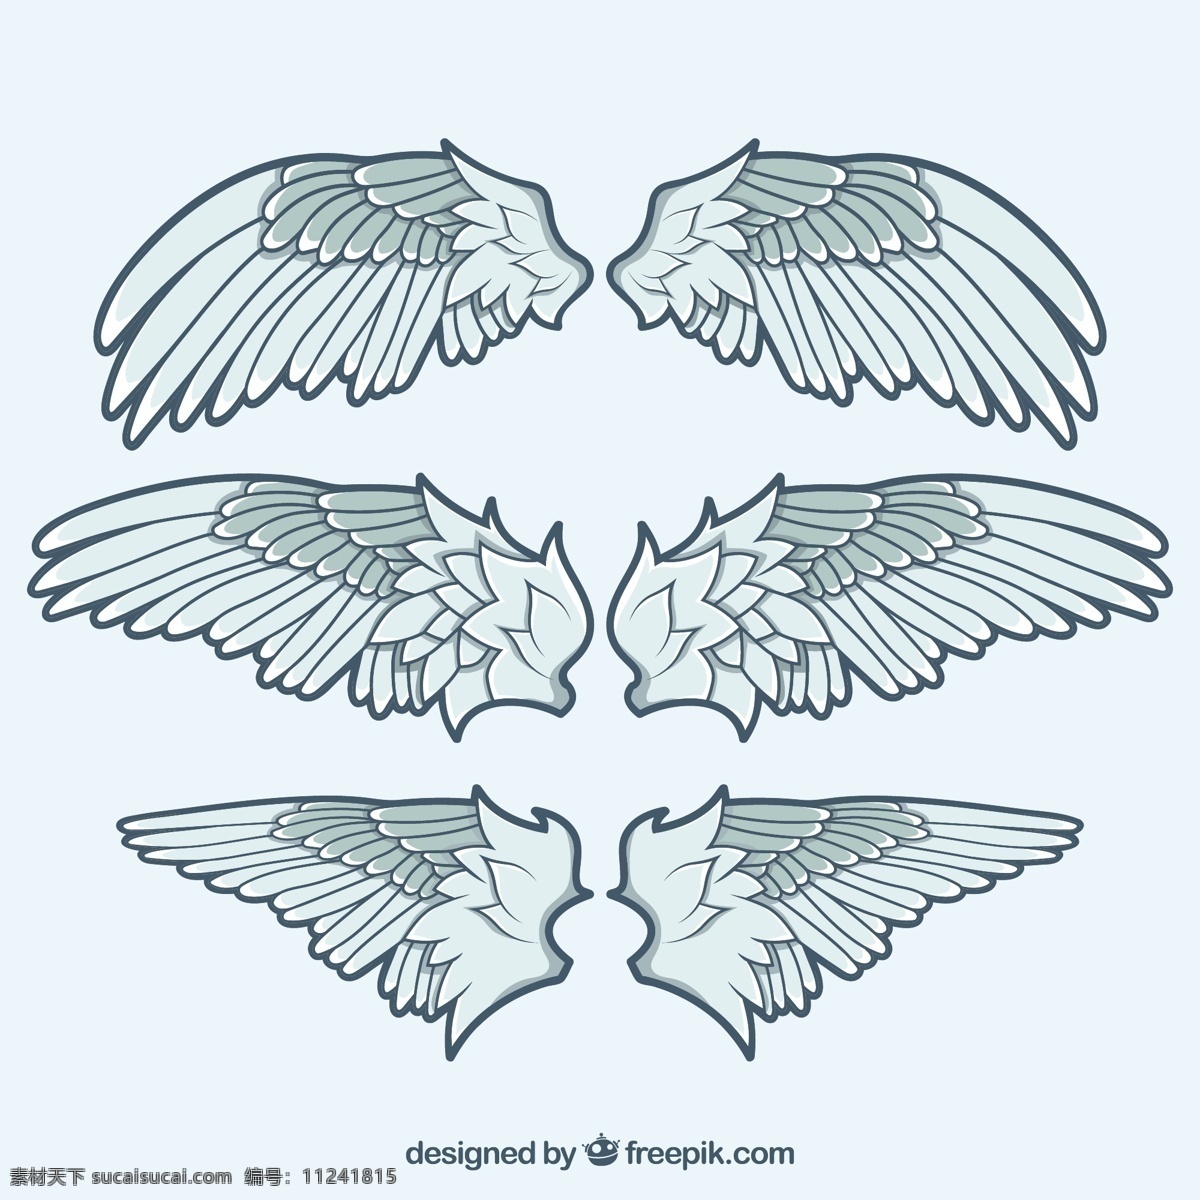 三个 手绘 风格 双翼 翅膀 平面设计 手绘风格 平面设计素材 矢量翅膀 双翼羽毛 装饰图案 金色翅膀 隐形的翅膀 羽毛天使 飞翔 自由 羽毛 天使翅膀 羽毛翅膀